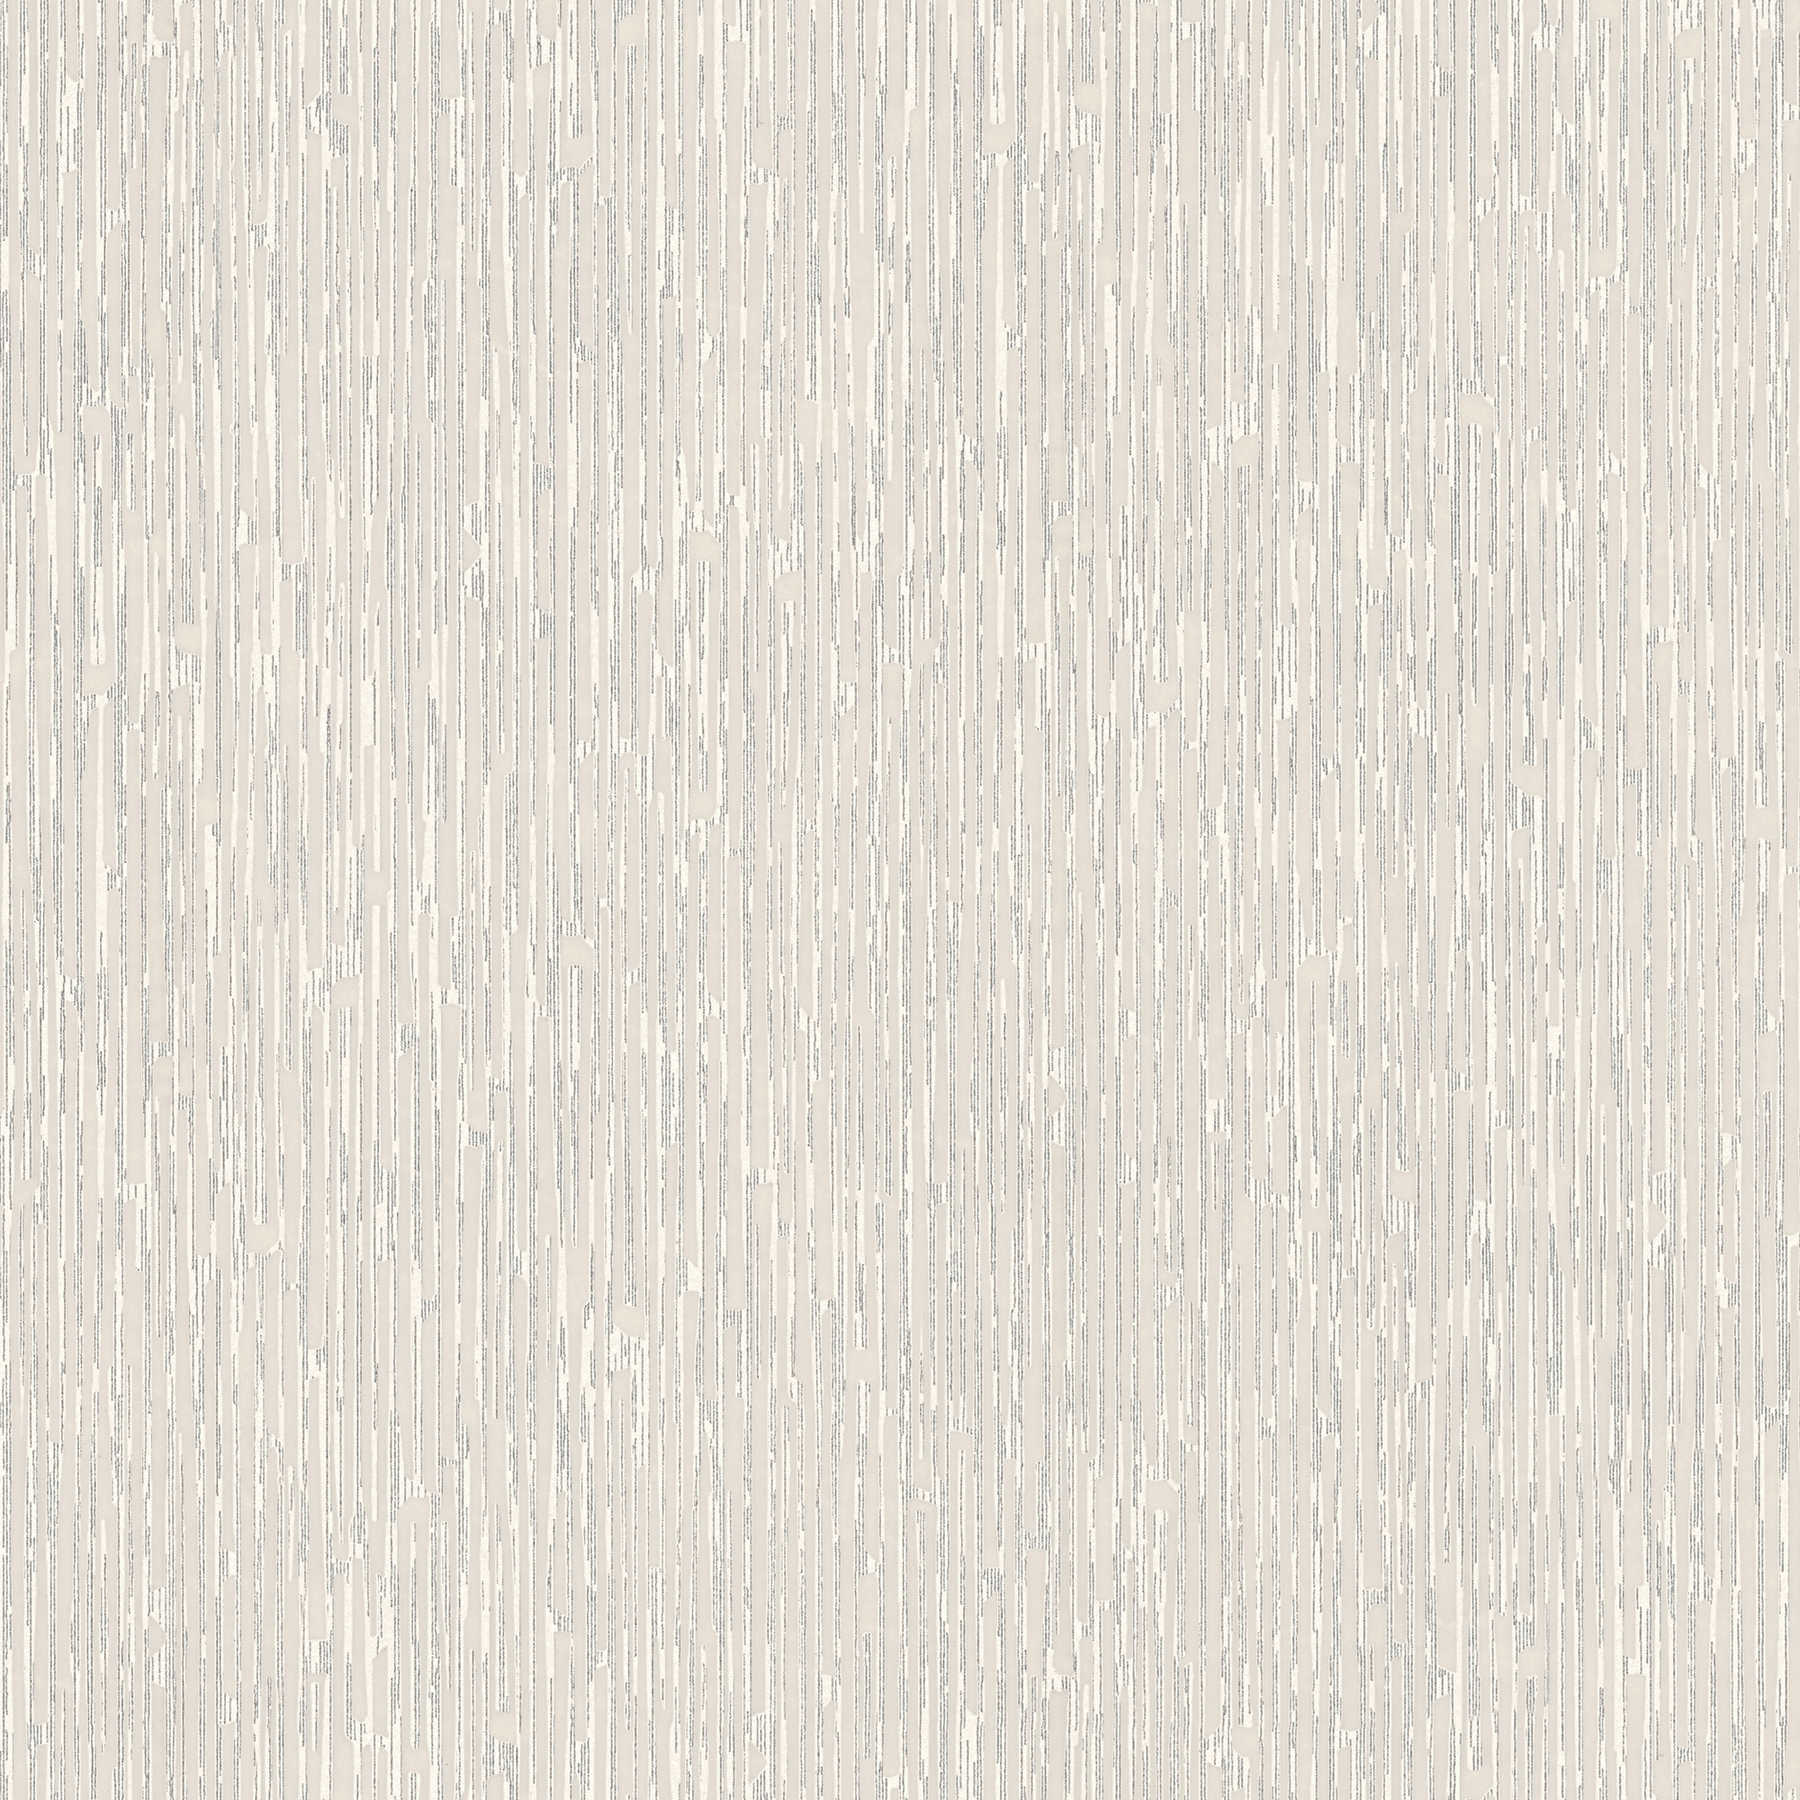 Melange wallpaper grey with metallic accents
